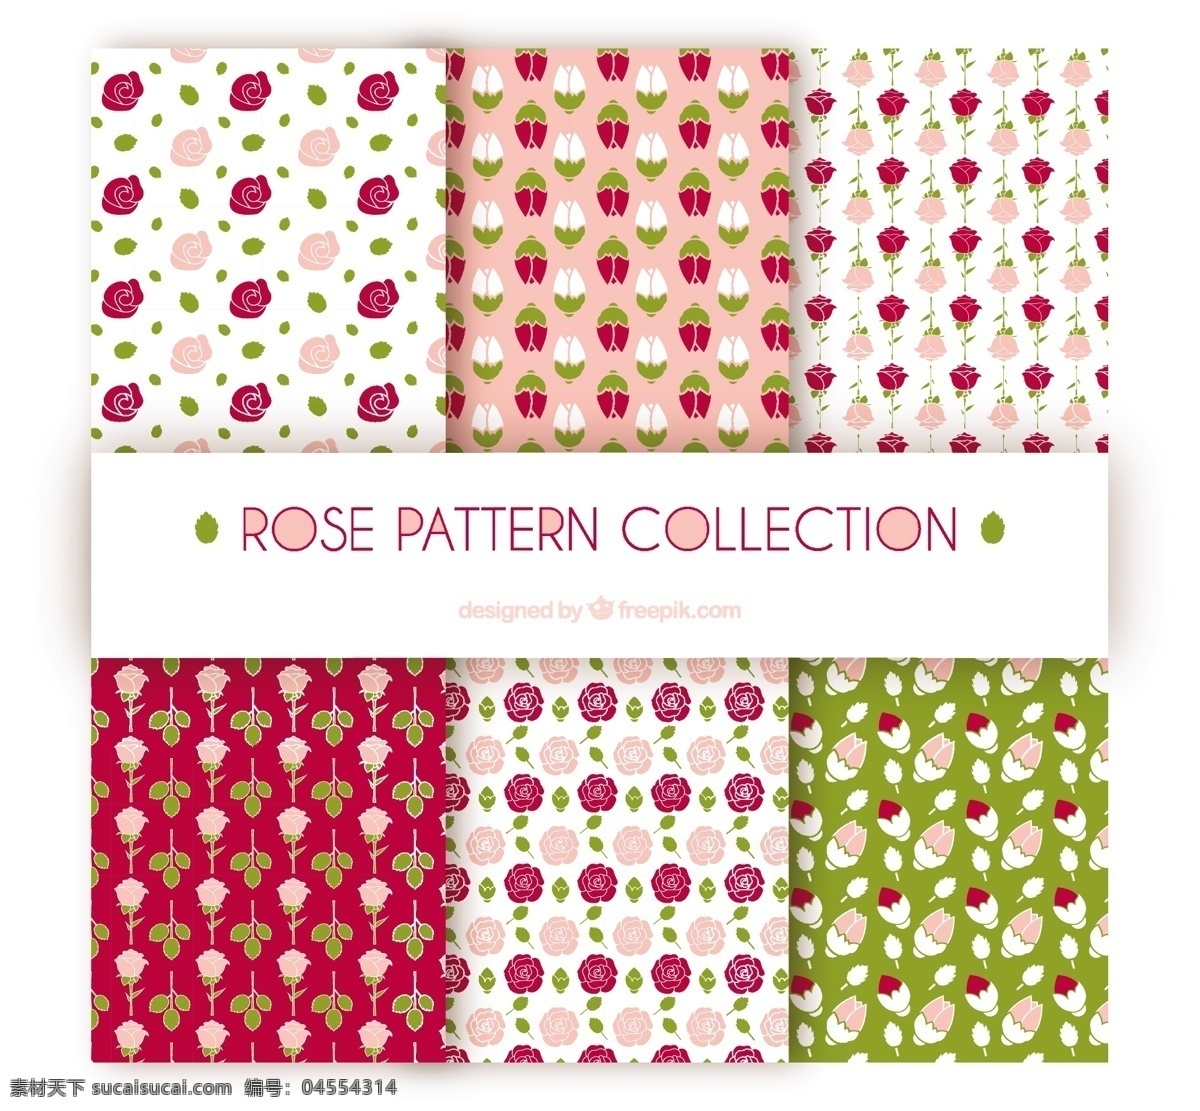 六 种 玫瑰 花纹 装饰 图案 矢量 六种 玫瑰花纹 装饰图案 矢量素材